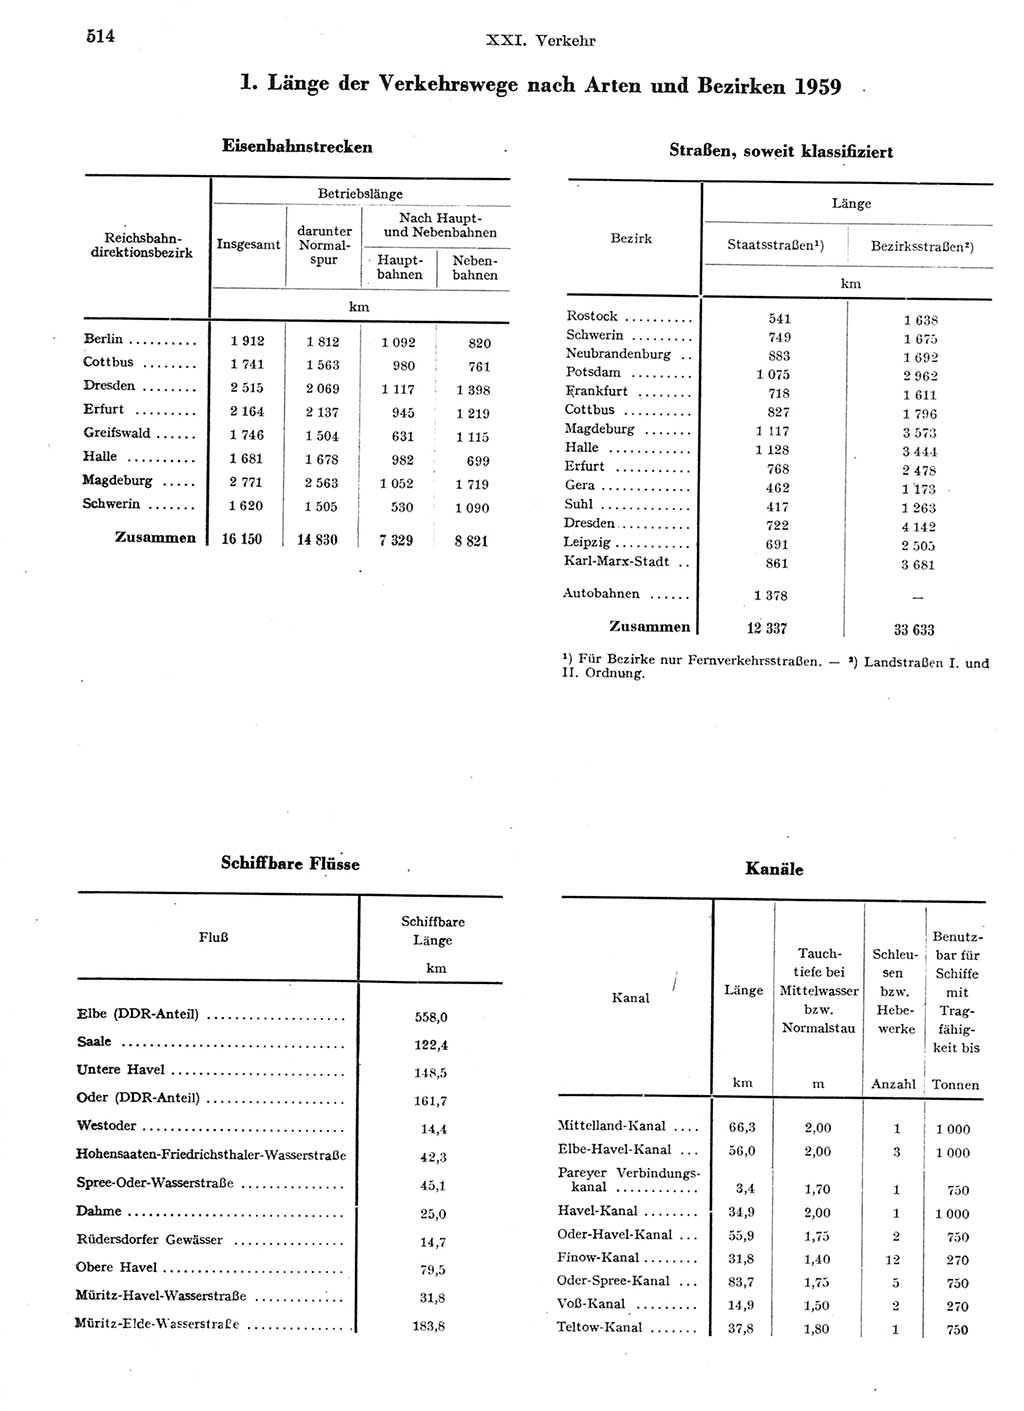 Statistisches Jahrbuch der Deutschen Demokratischen Republik (DDR) 1959, Seite 514 (Stat. Jb. DDR 1959, S. 514)